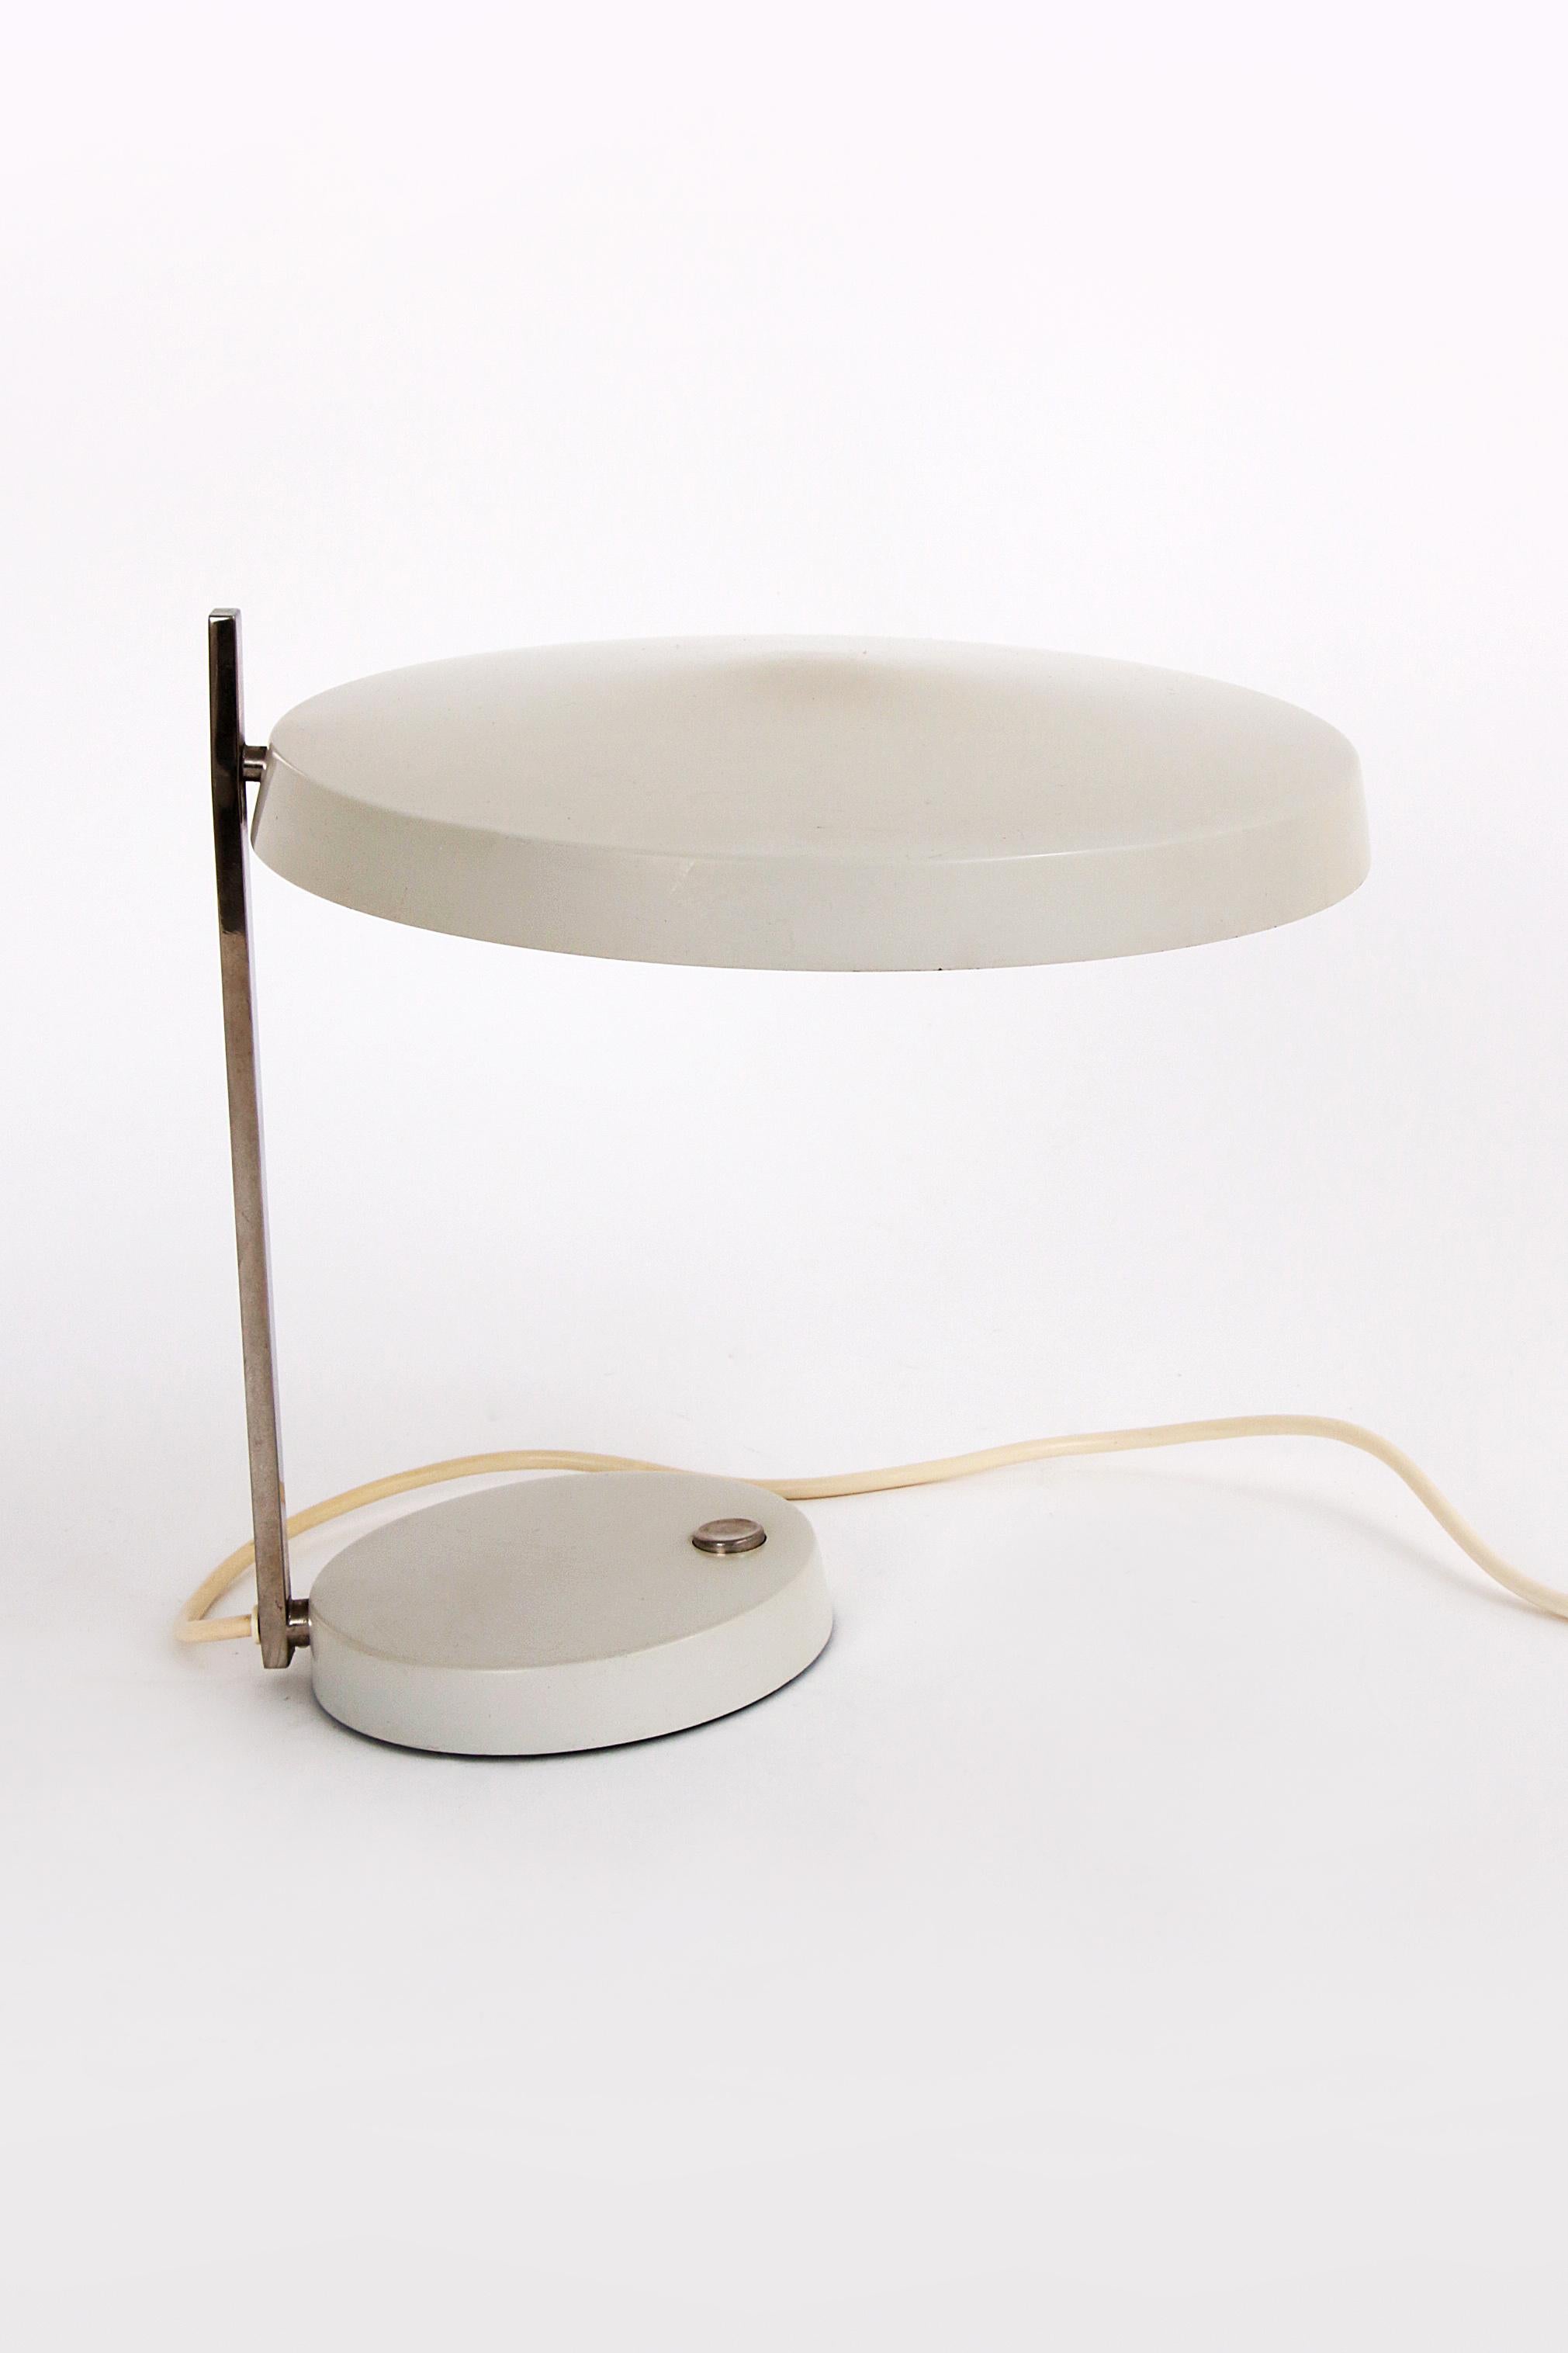 Metal Hillebrand leuchten, desk lamp Oslo designed by Heinz Pfaender 1960.